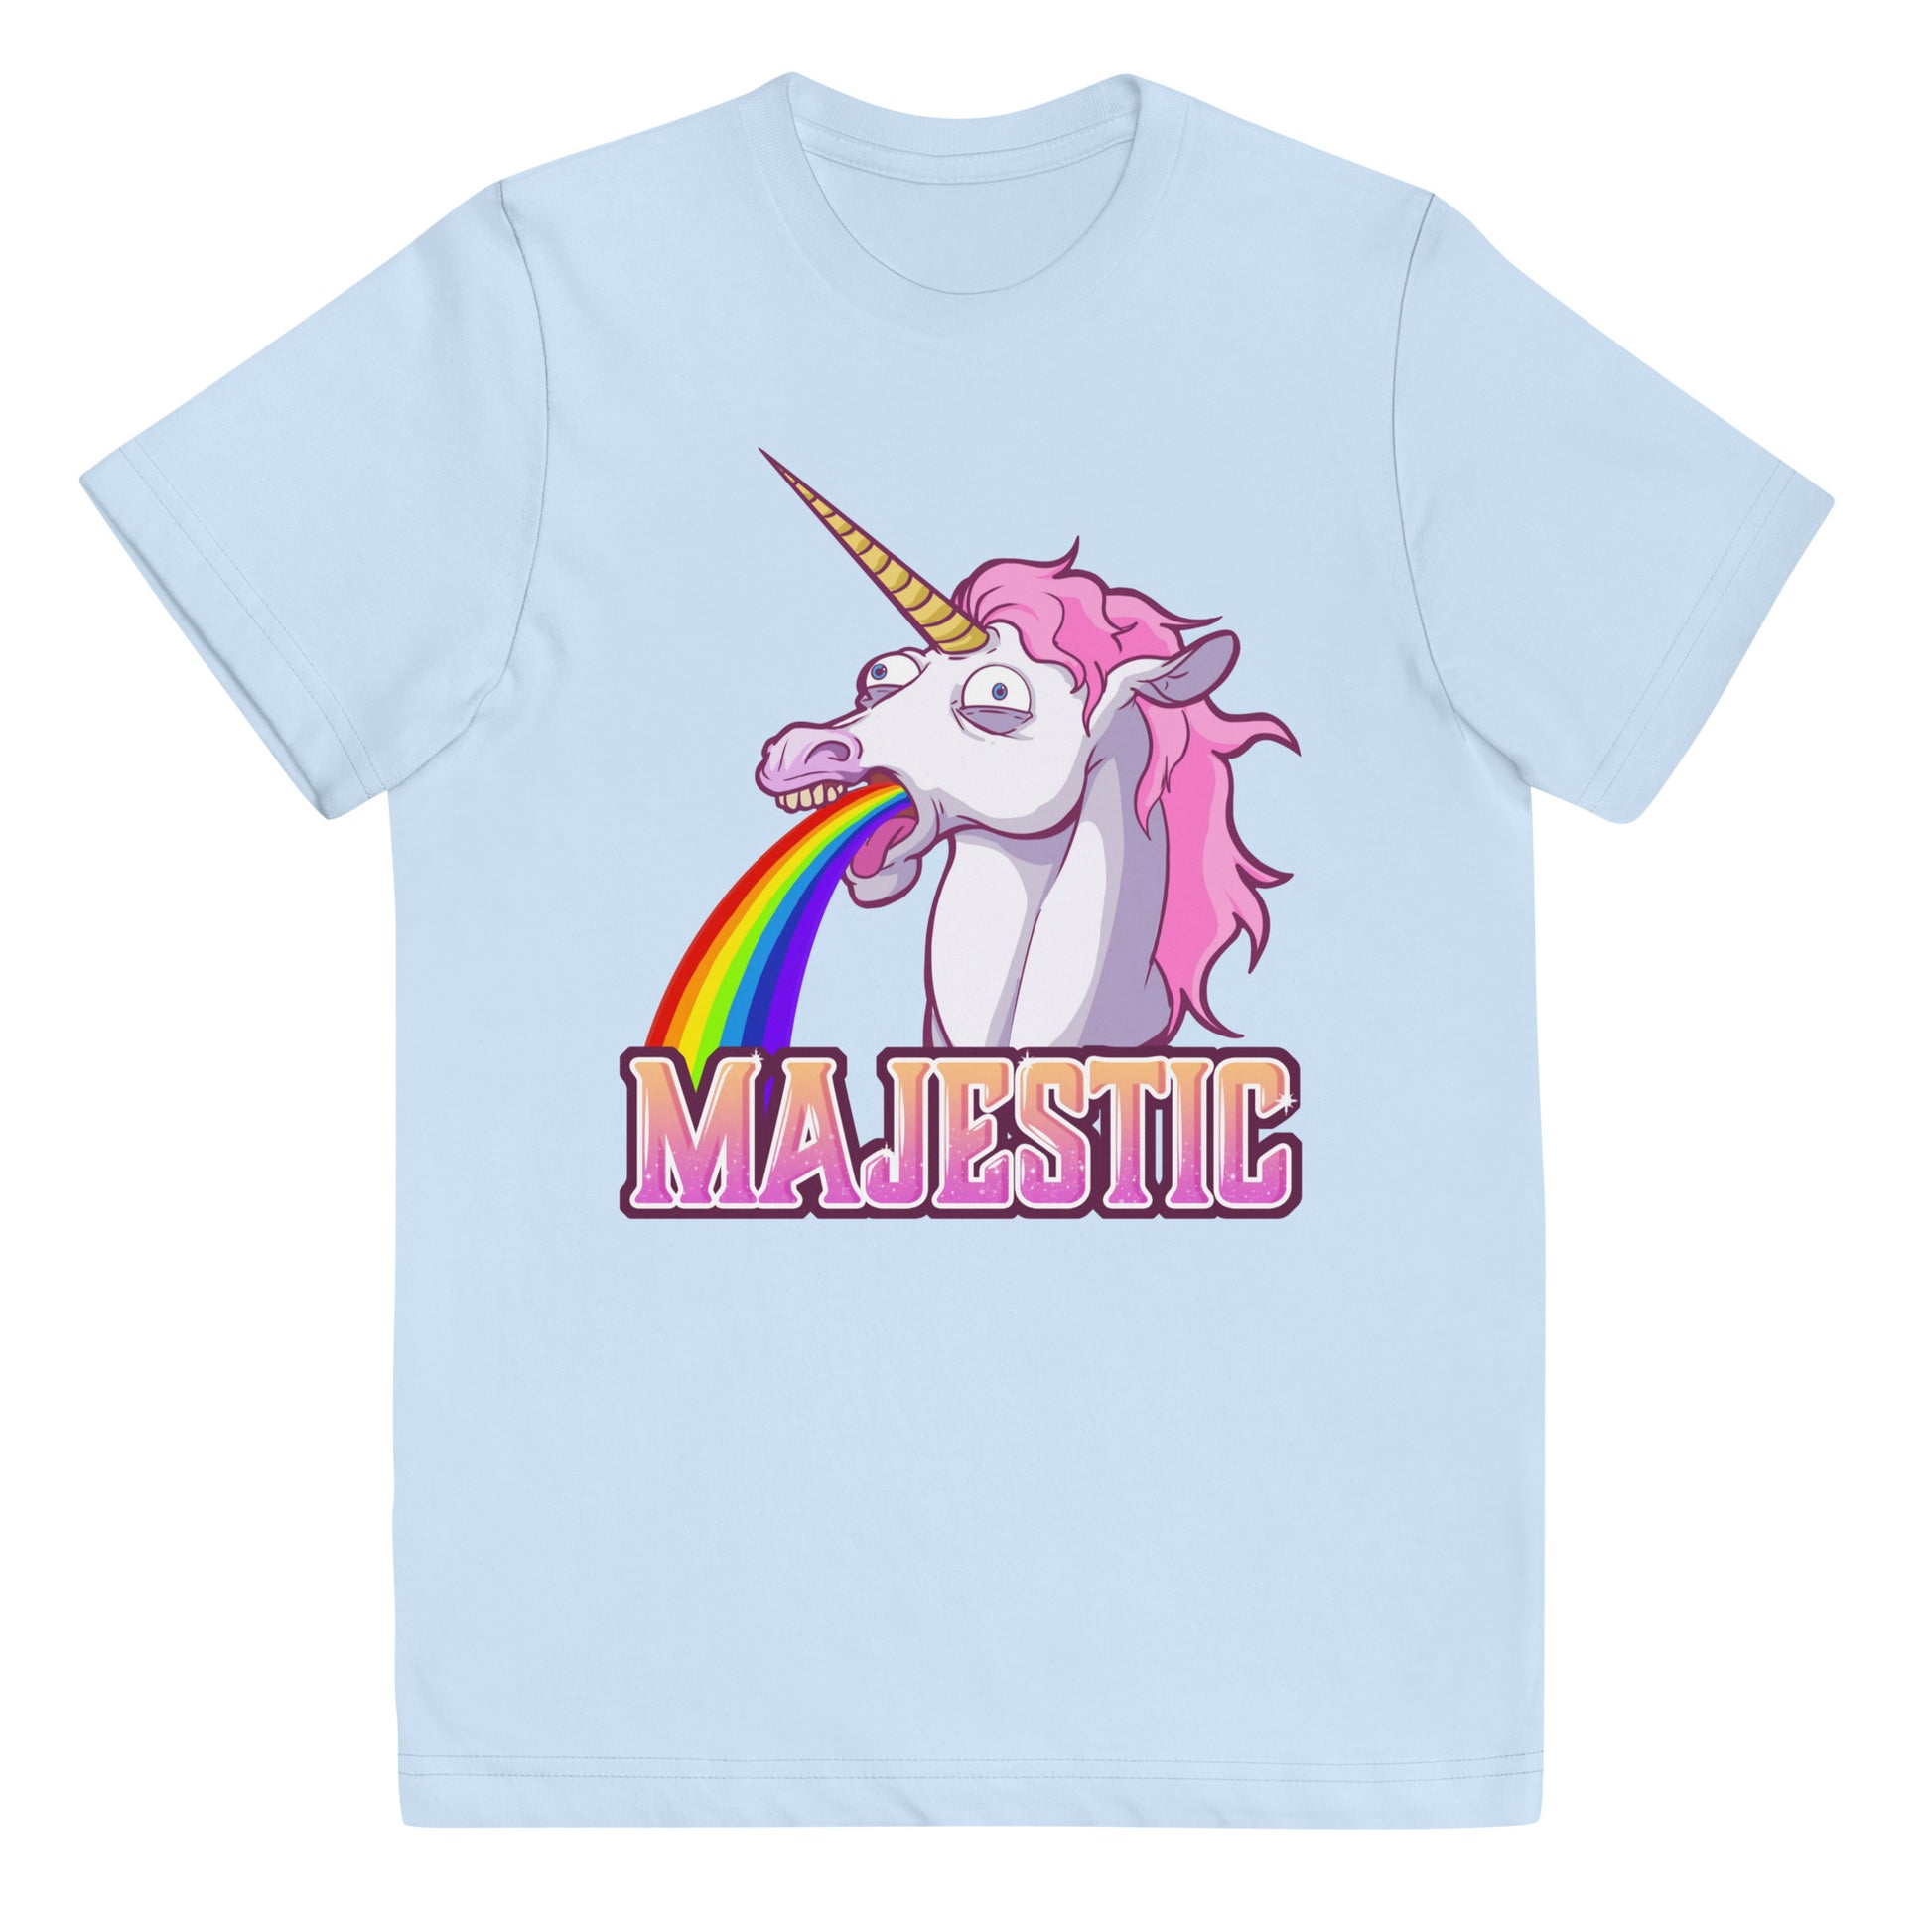 Majestic Unicorn Youth jersey t-shirt  Level 1 Gamers Light Blue XS 